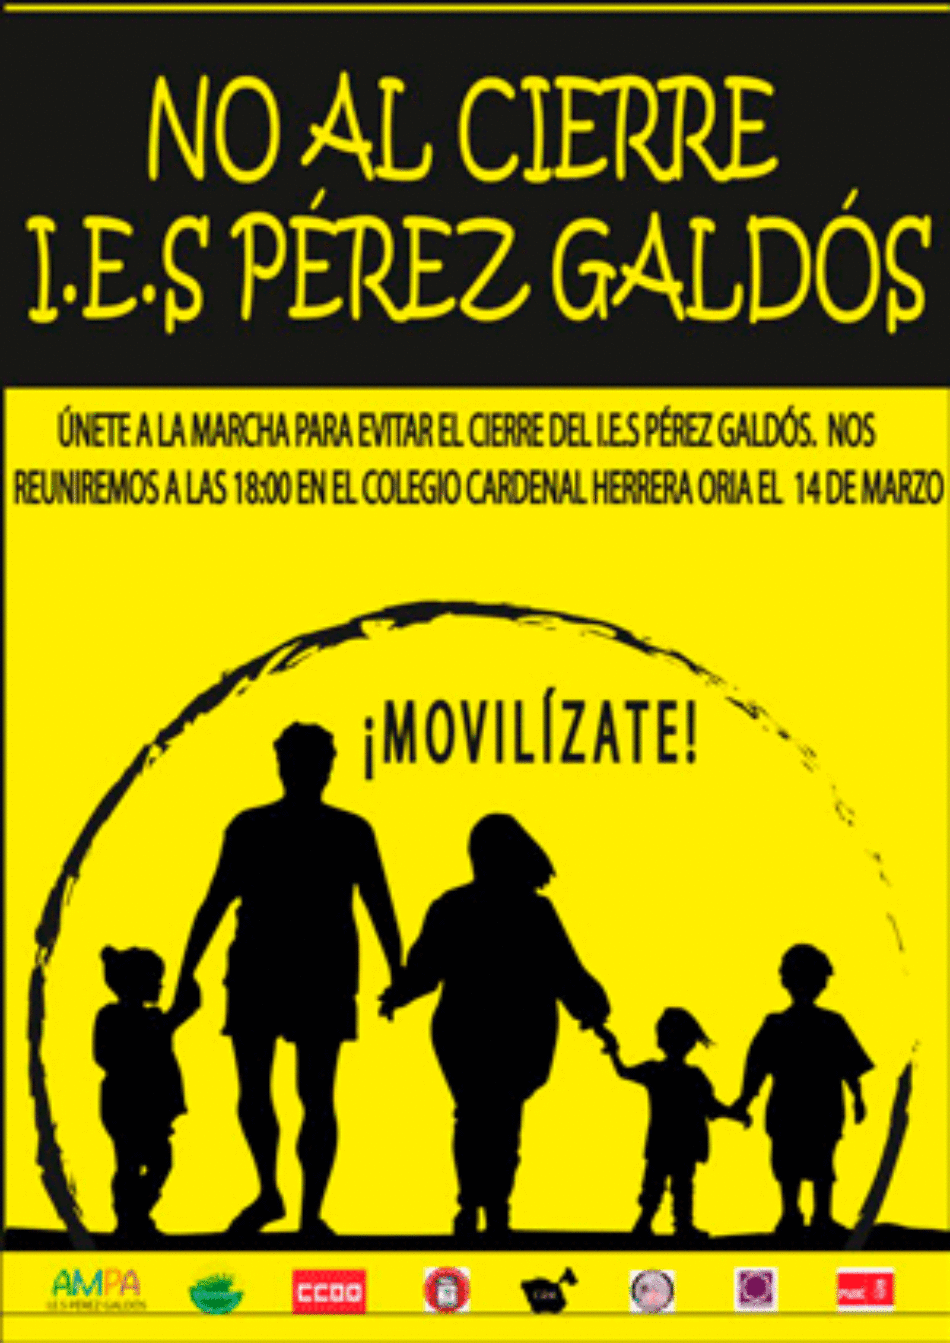 Manifestación contra el cierre del IES Pérez Galdós: 14 de marzo a las 18 horas